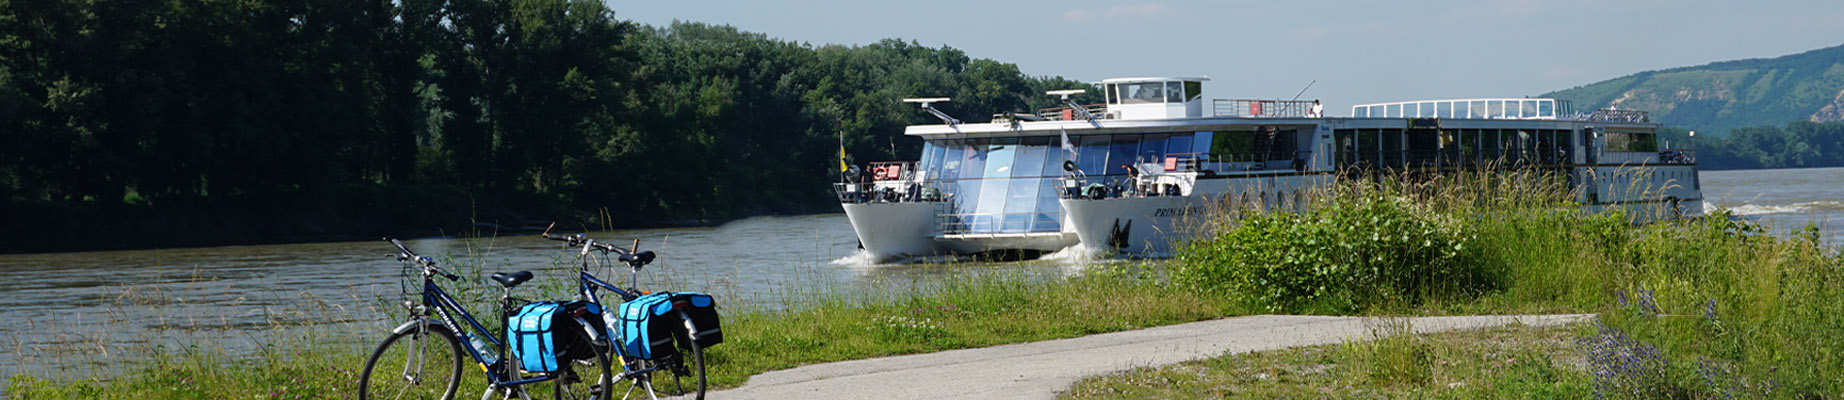 MS Primadonna auf der Donau